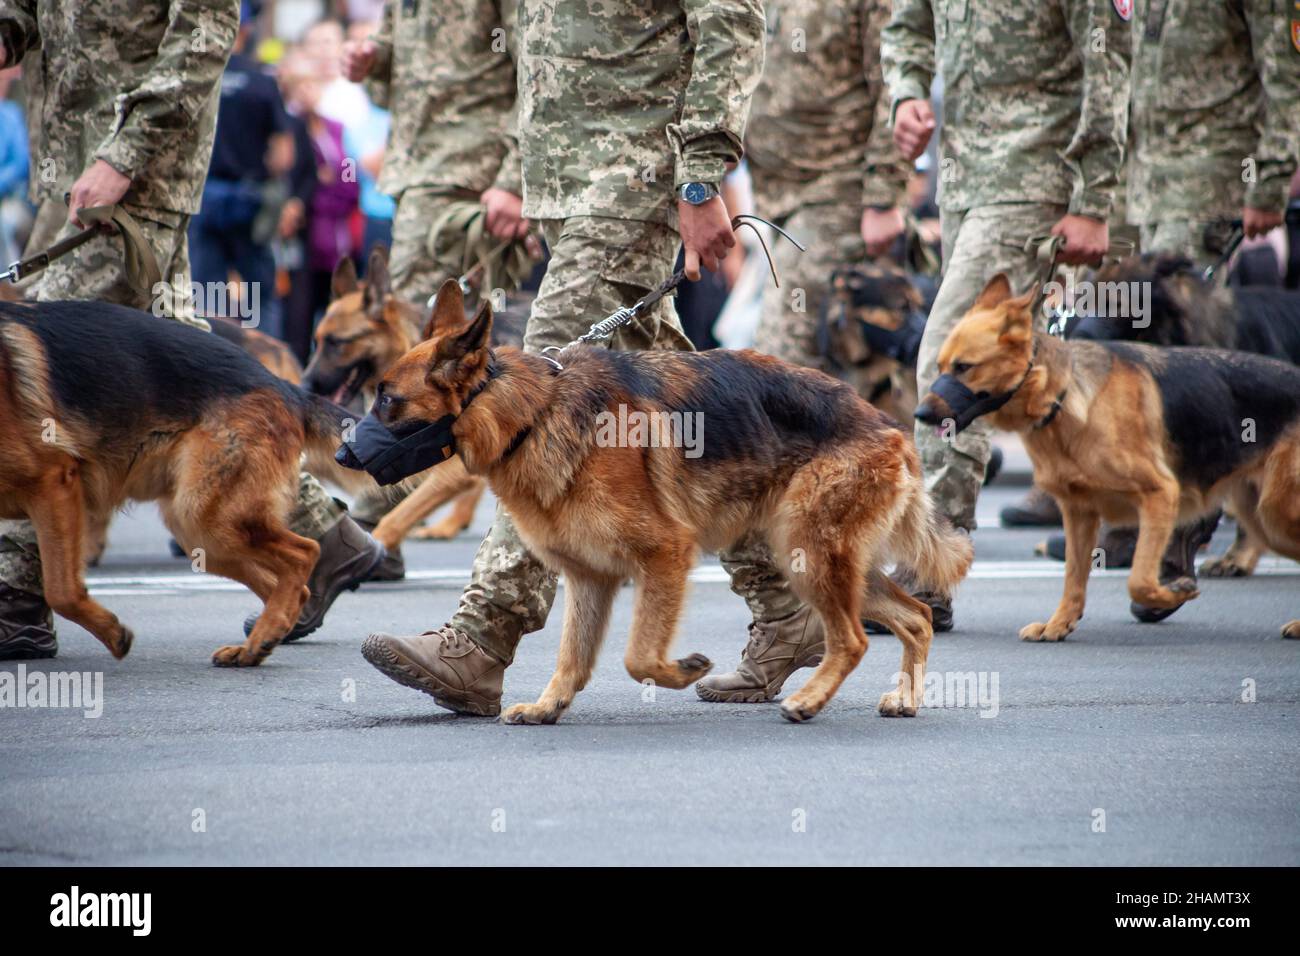 Hunde im Dienst des Staates. Shepherd Dog Grenzschutz auf der Straße. Ein Wachhund in einer Schnauze. Reinrassiger Hund auf Parade mit dem Militär Stockfoto